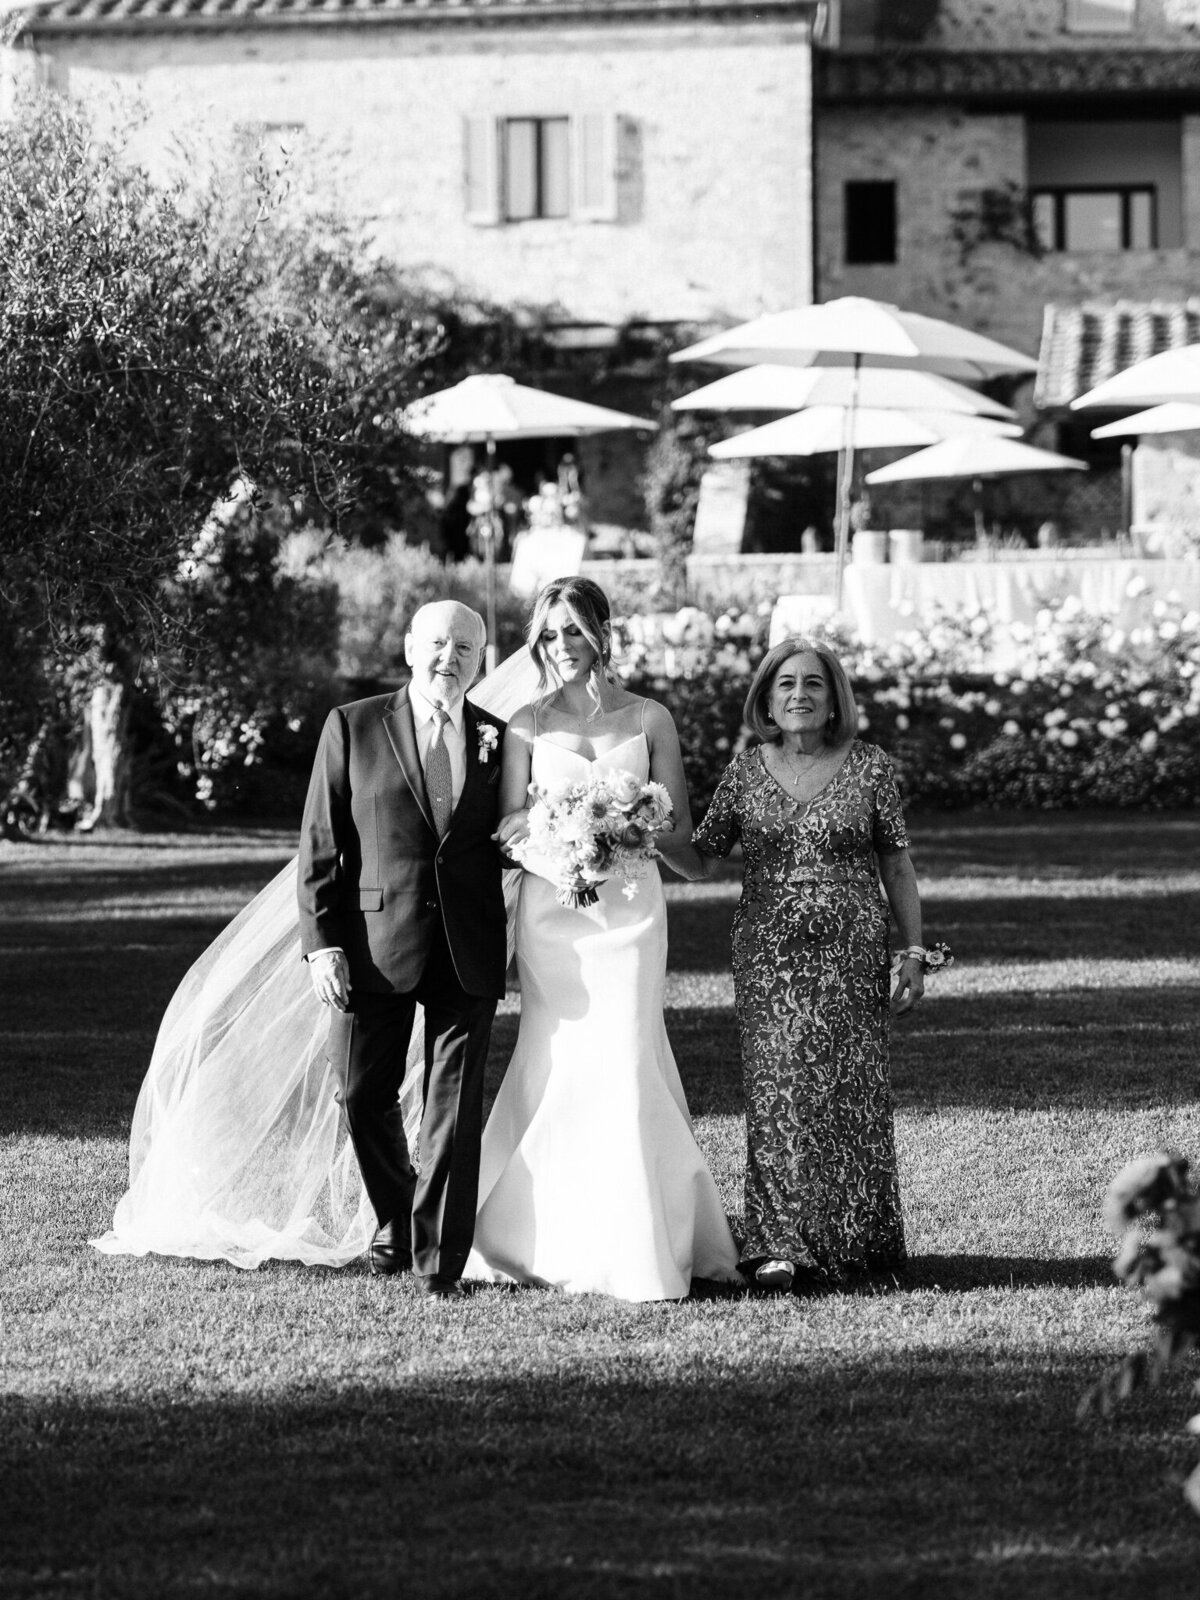 siena italy wedding photos-31